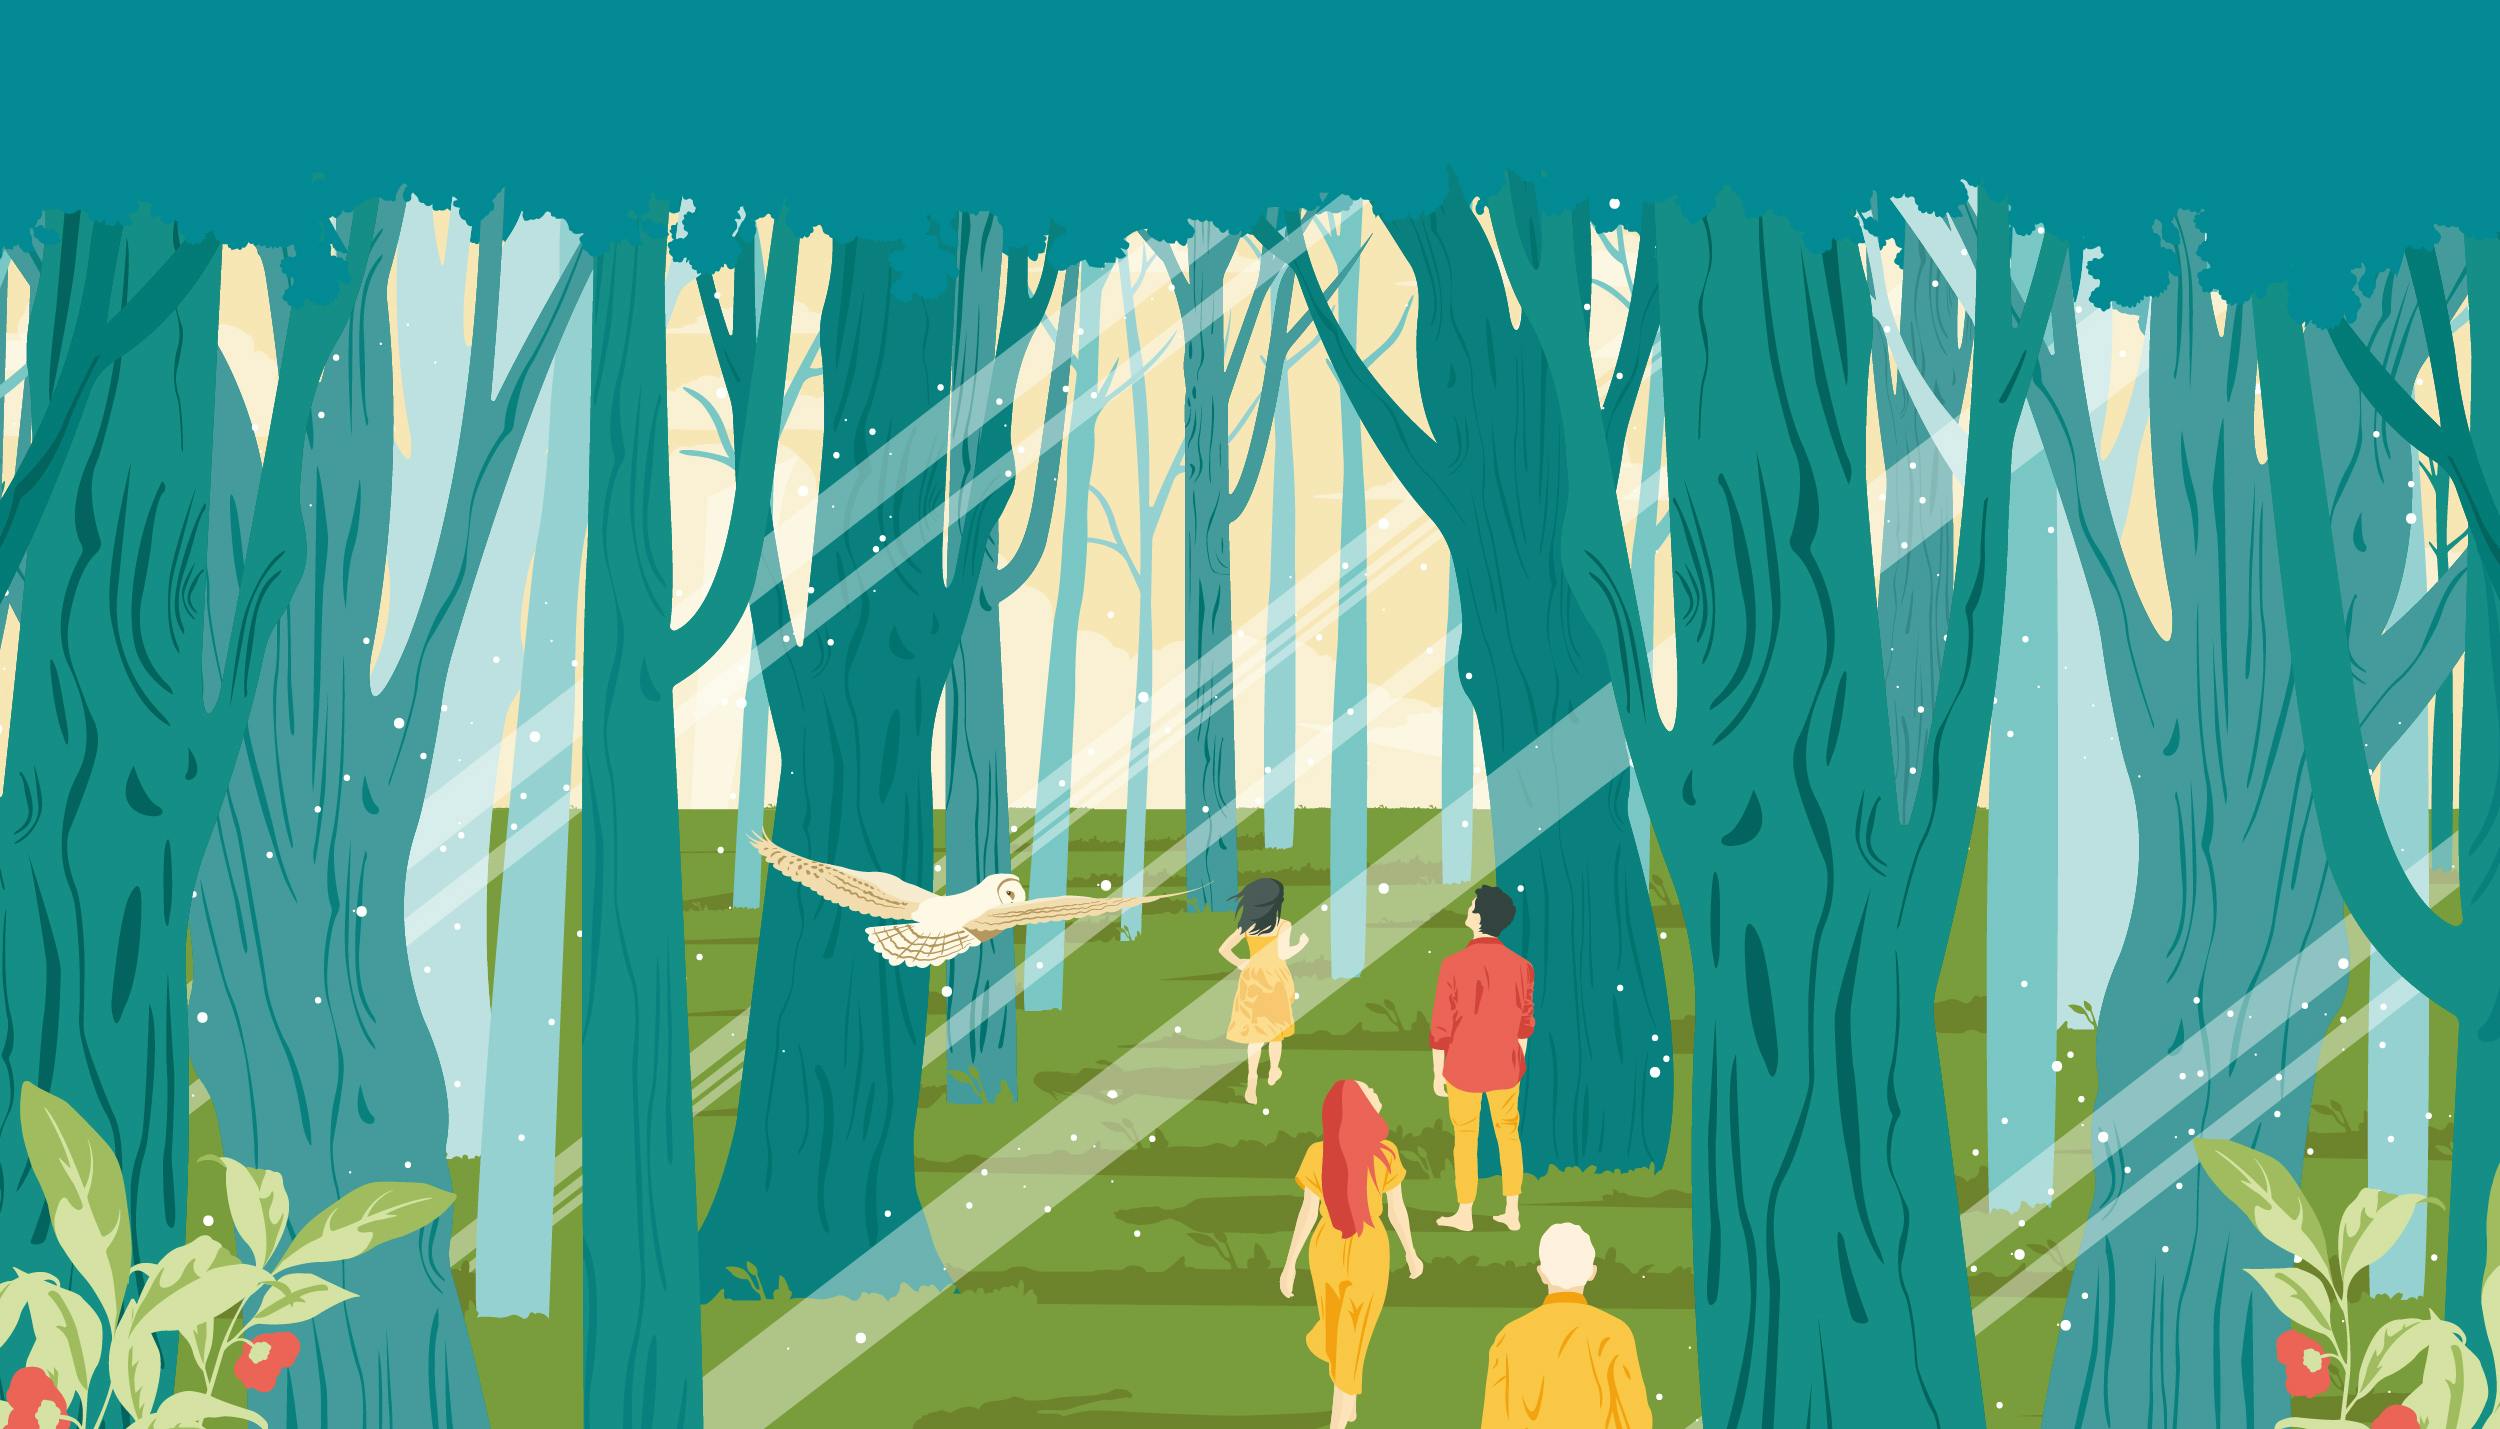 Poster grafico che rappresenta il bosco con persone che camminano, i colori dominanti sono verde e blu